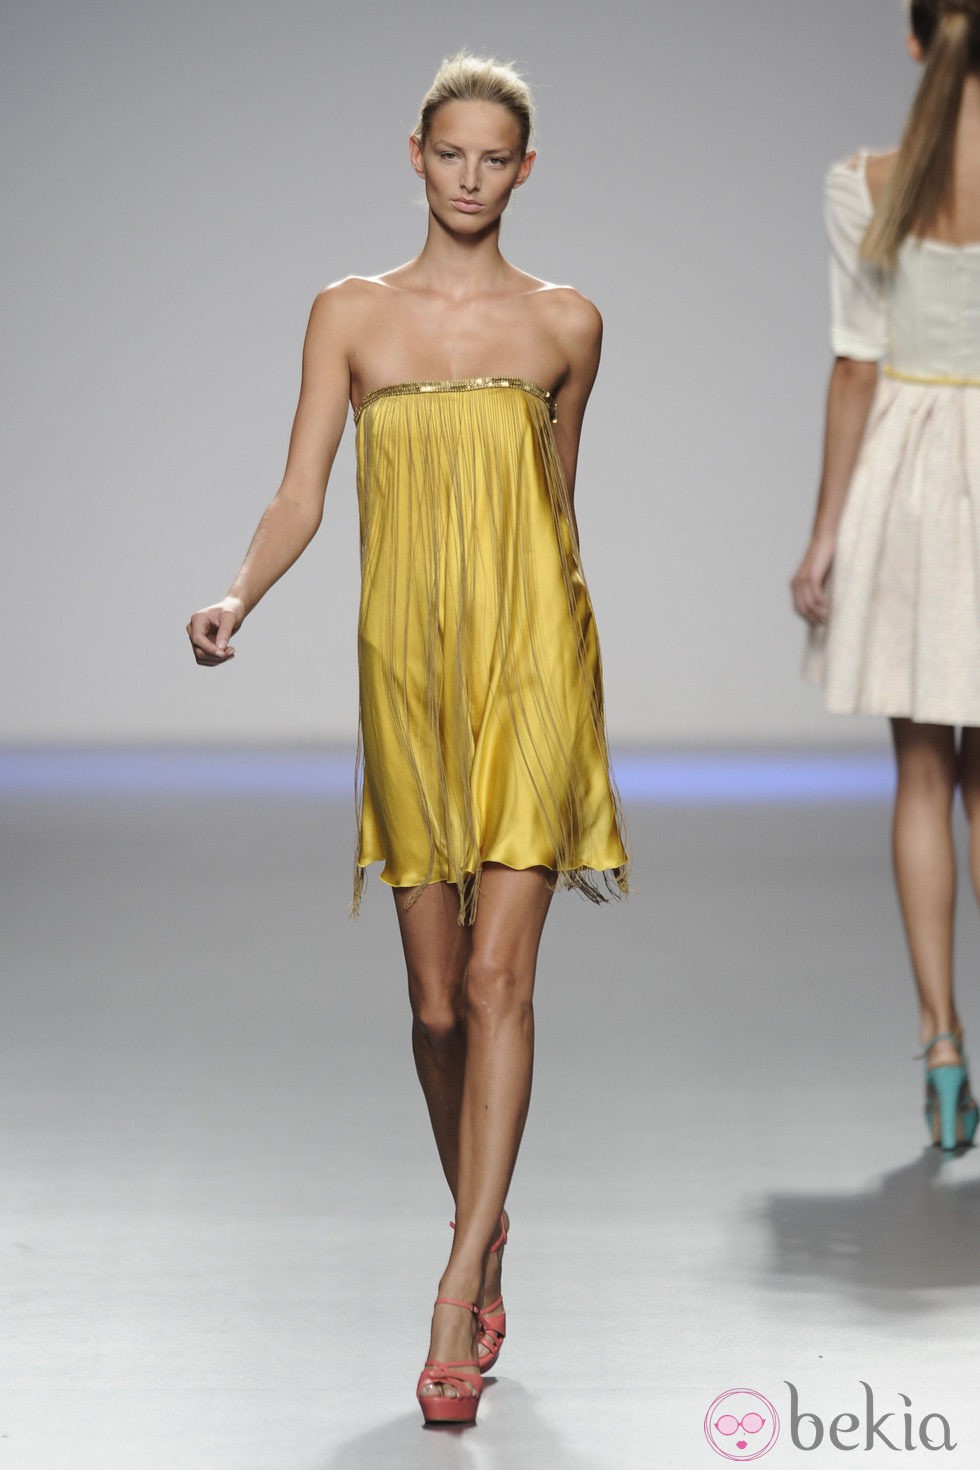 Vestido amarillo de seda con flecos de la colección primavera-verano 2013 de Kina Fernández